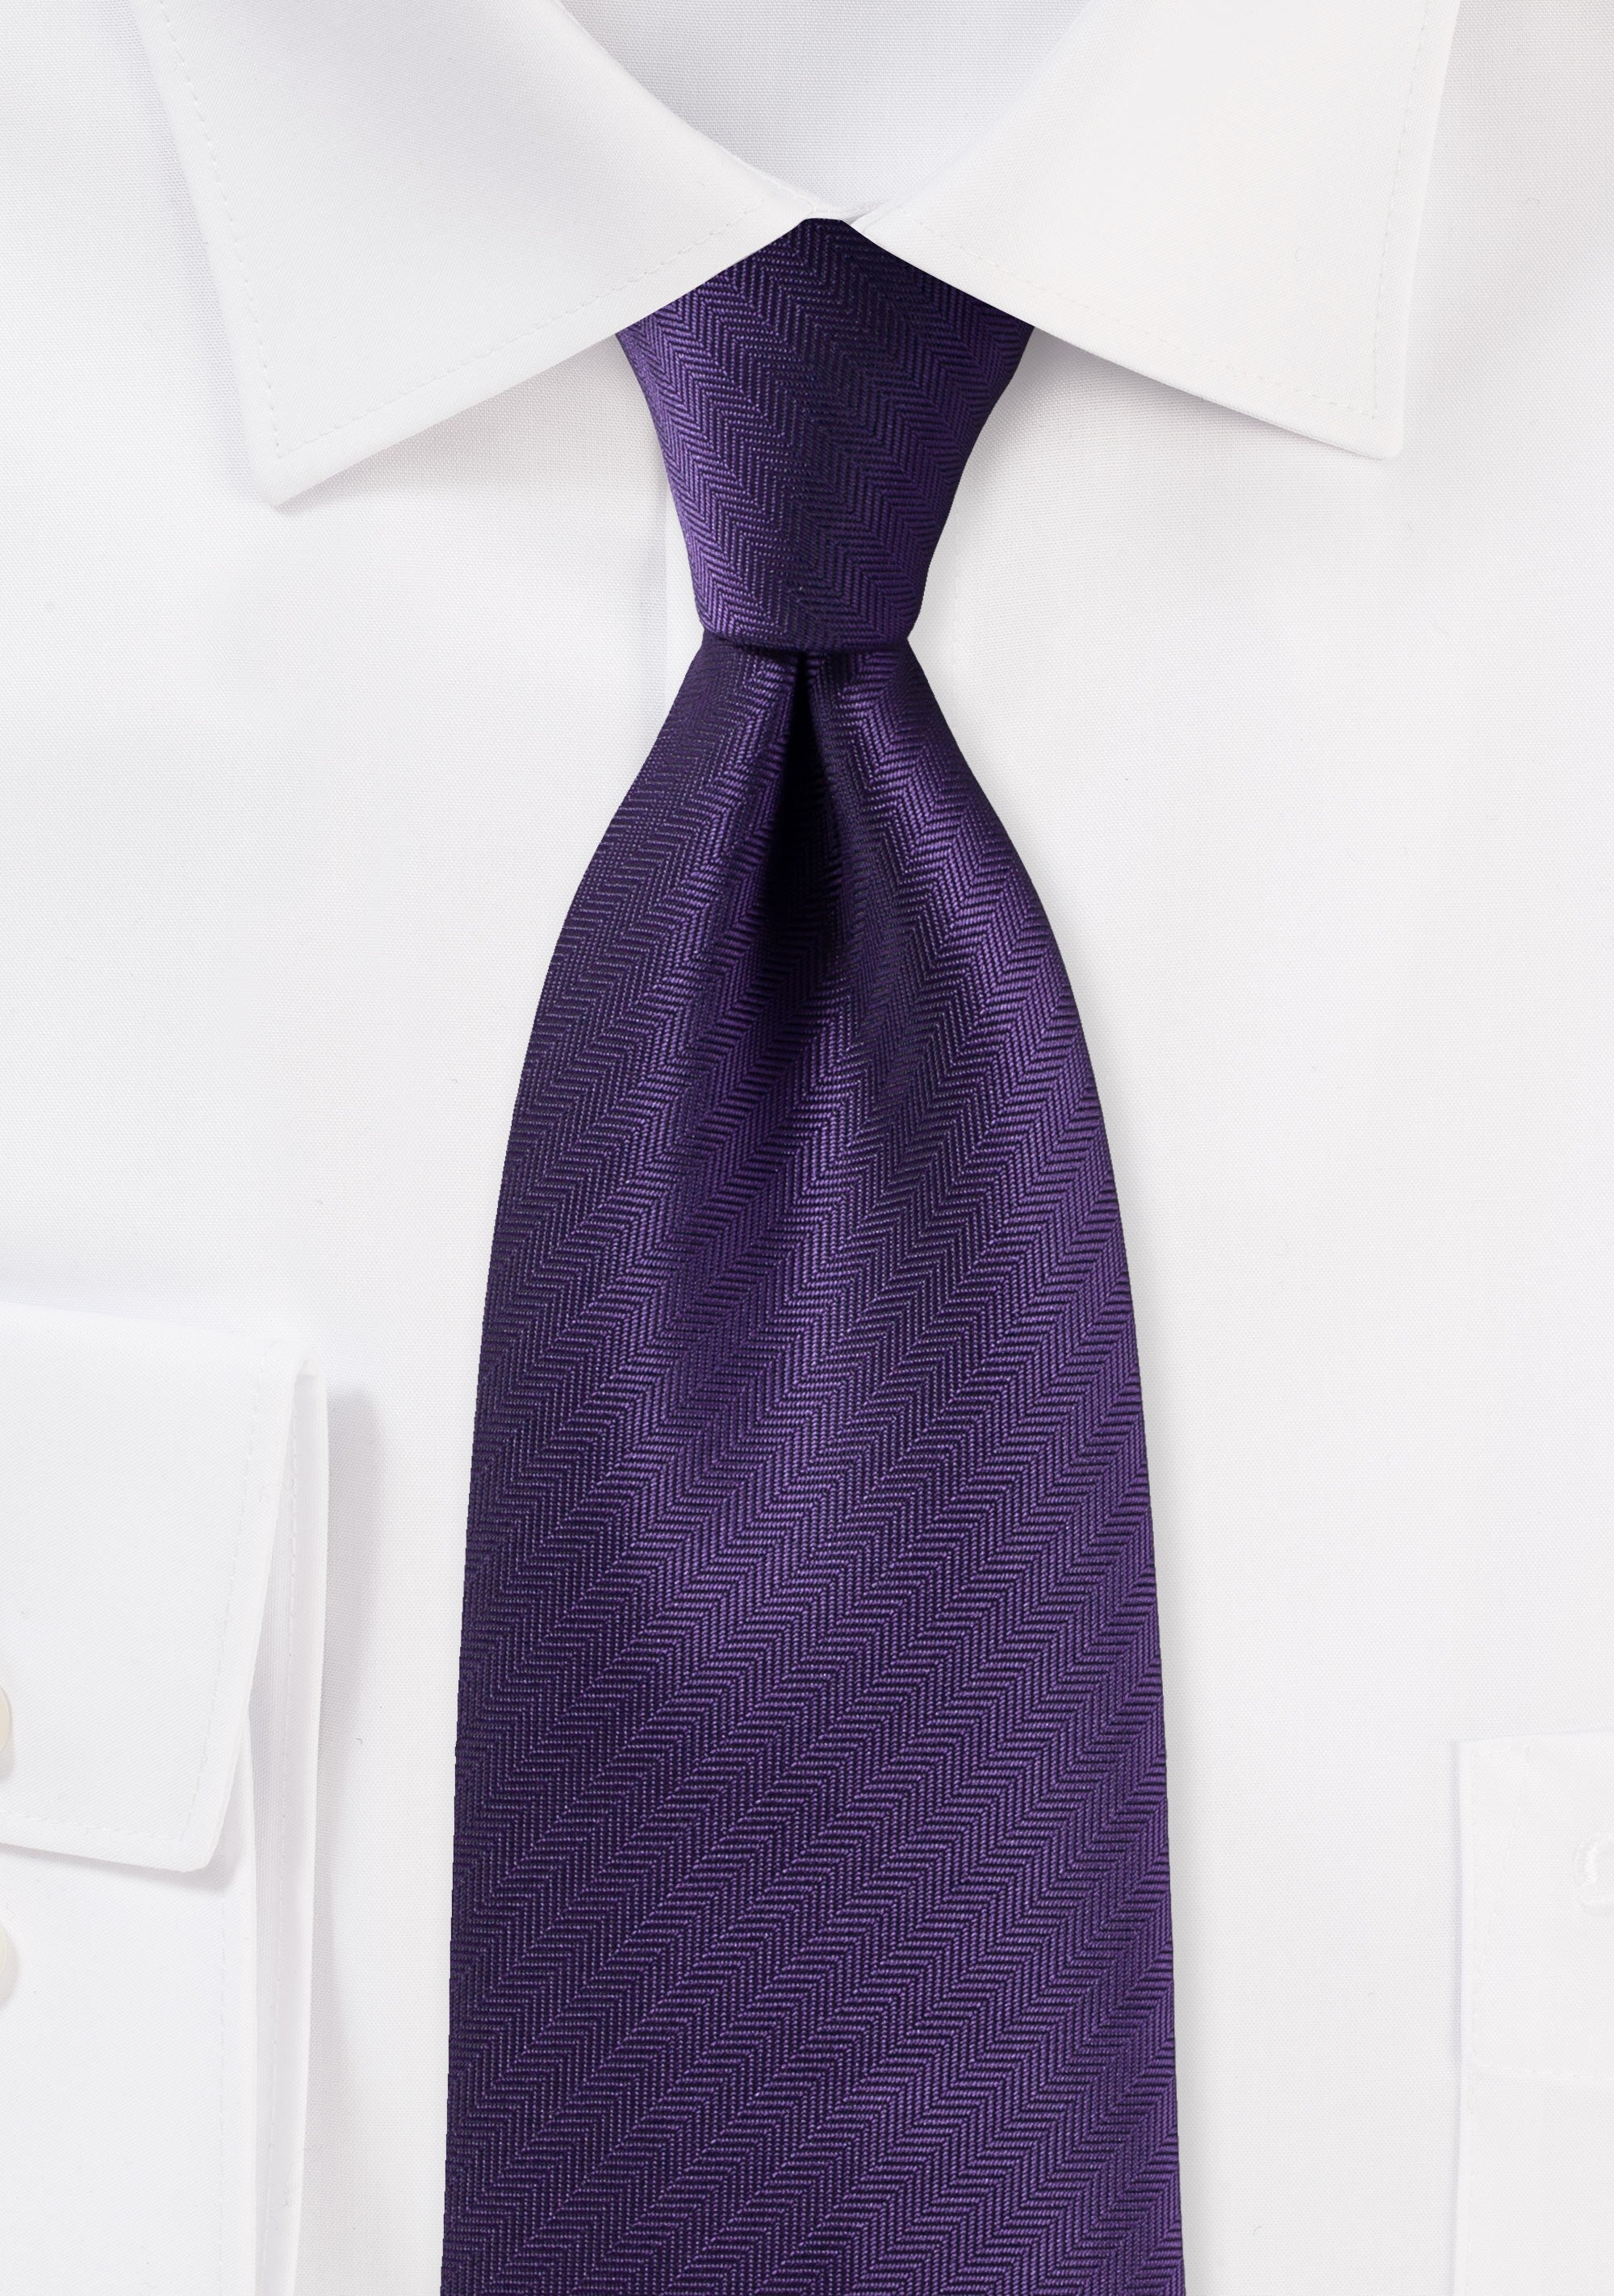 Regency Purple Herringbone Necktie